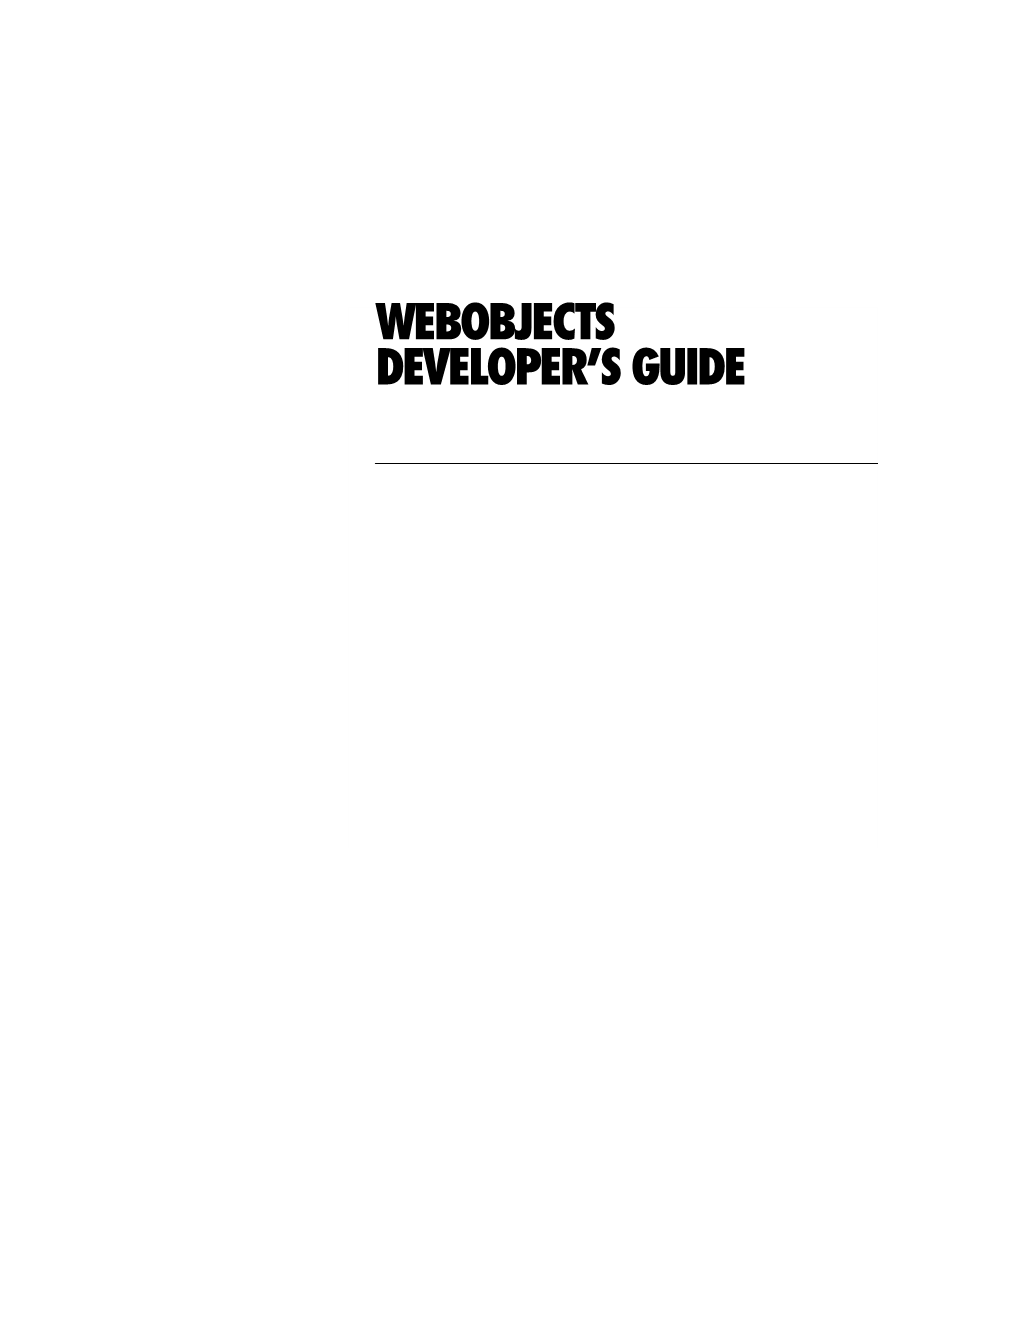 Webobjects Developer's Guide